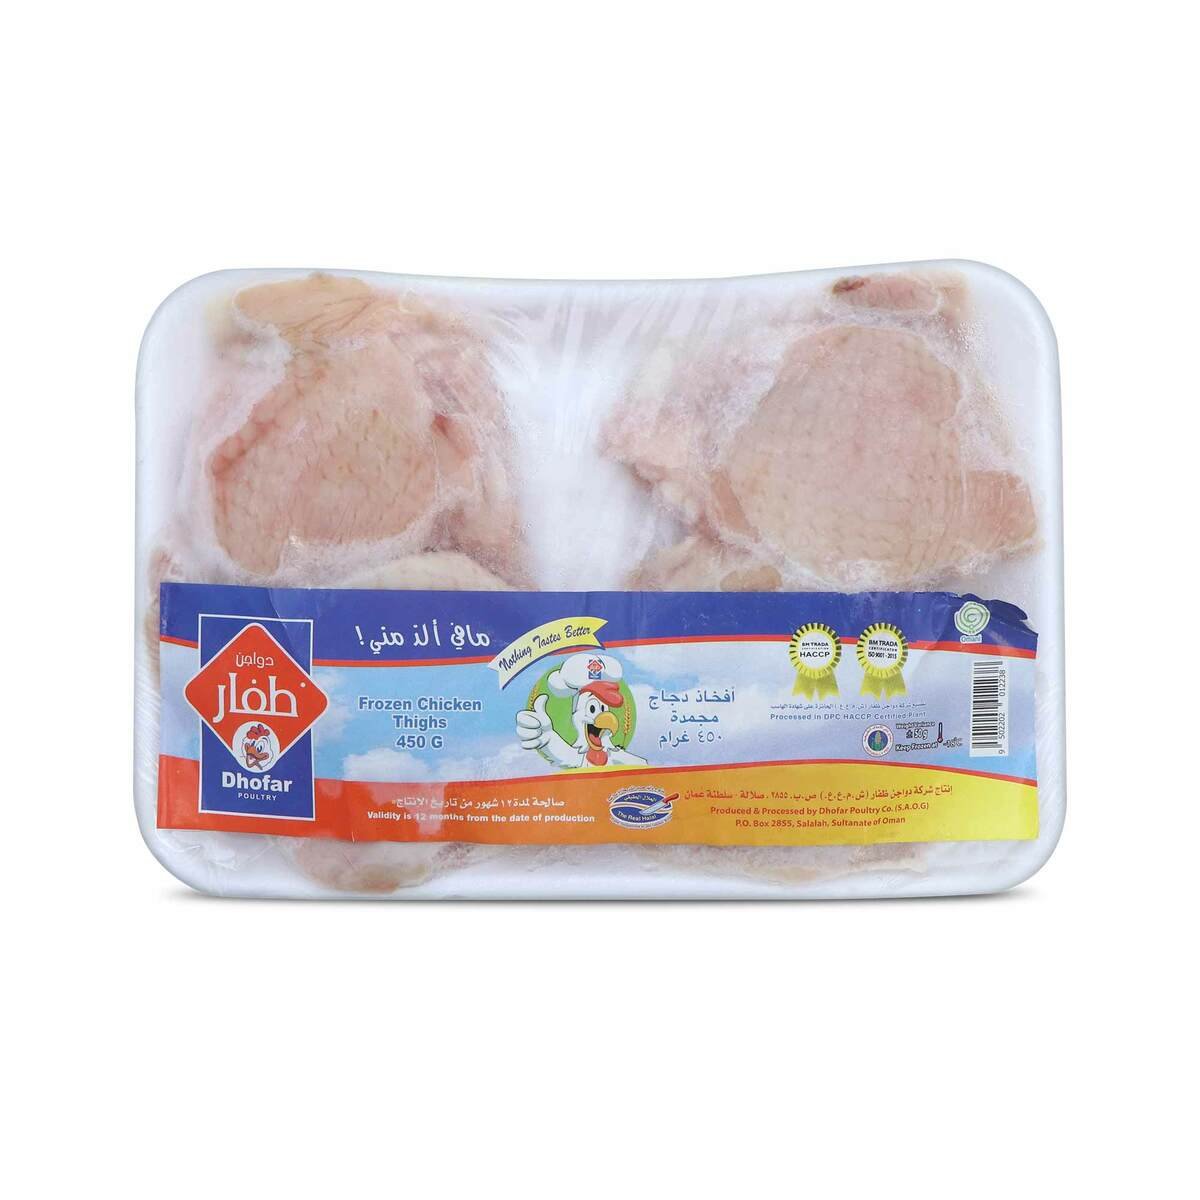 Dhofar Frozen Chicken Thighs 450g